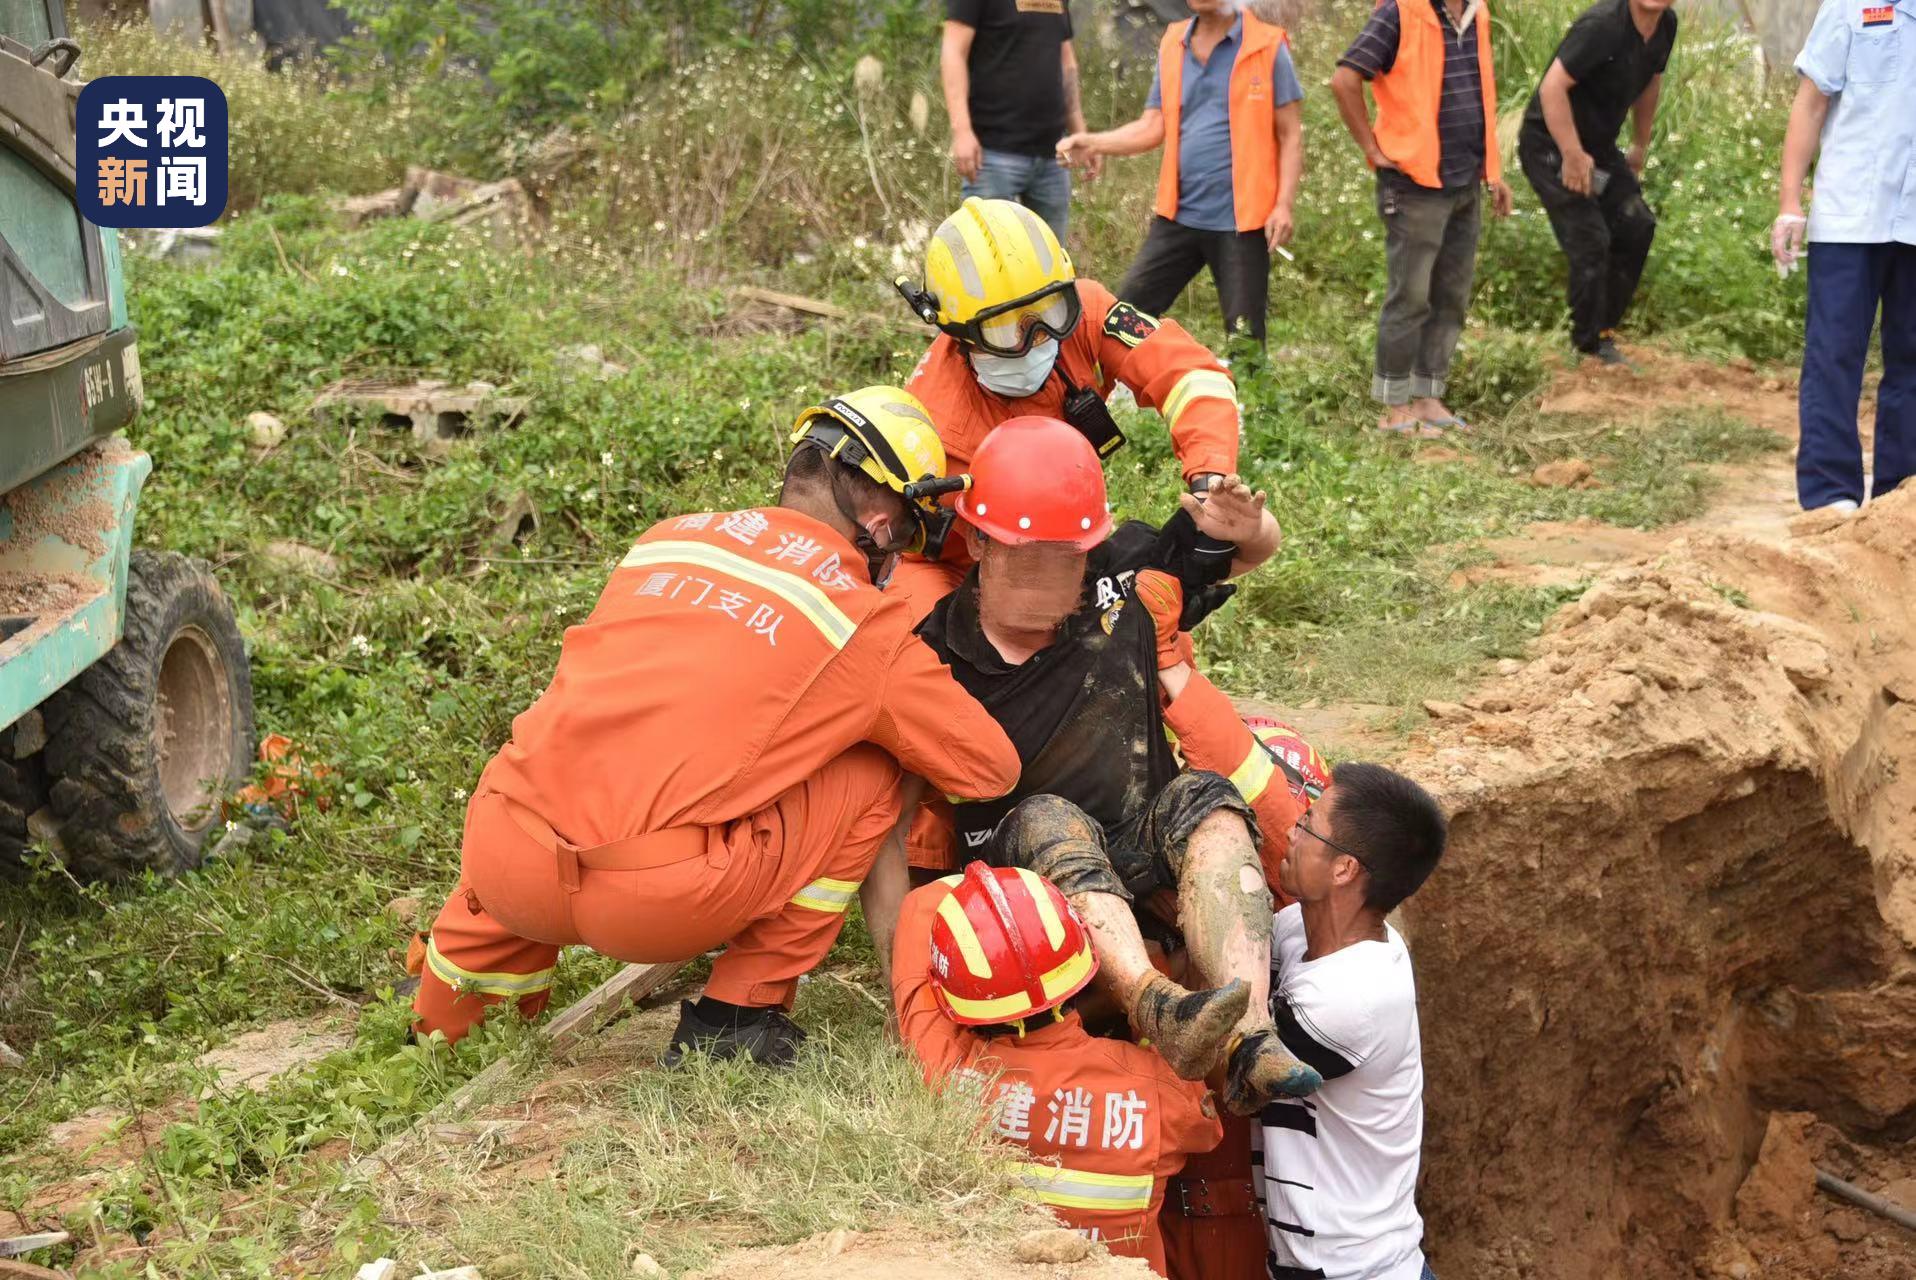 广州地铁施工区域塌陷3人被困 已投入1100多人救援 - 2019年12月2日, 俄罗斯卫星通讯社